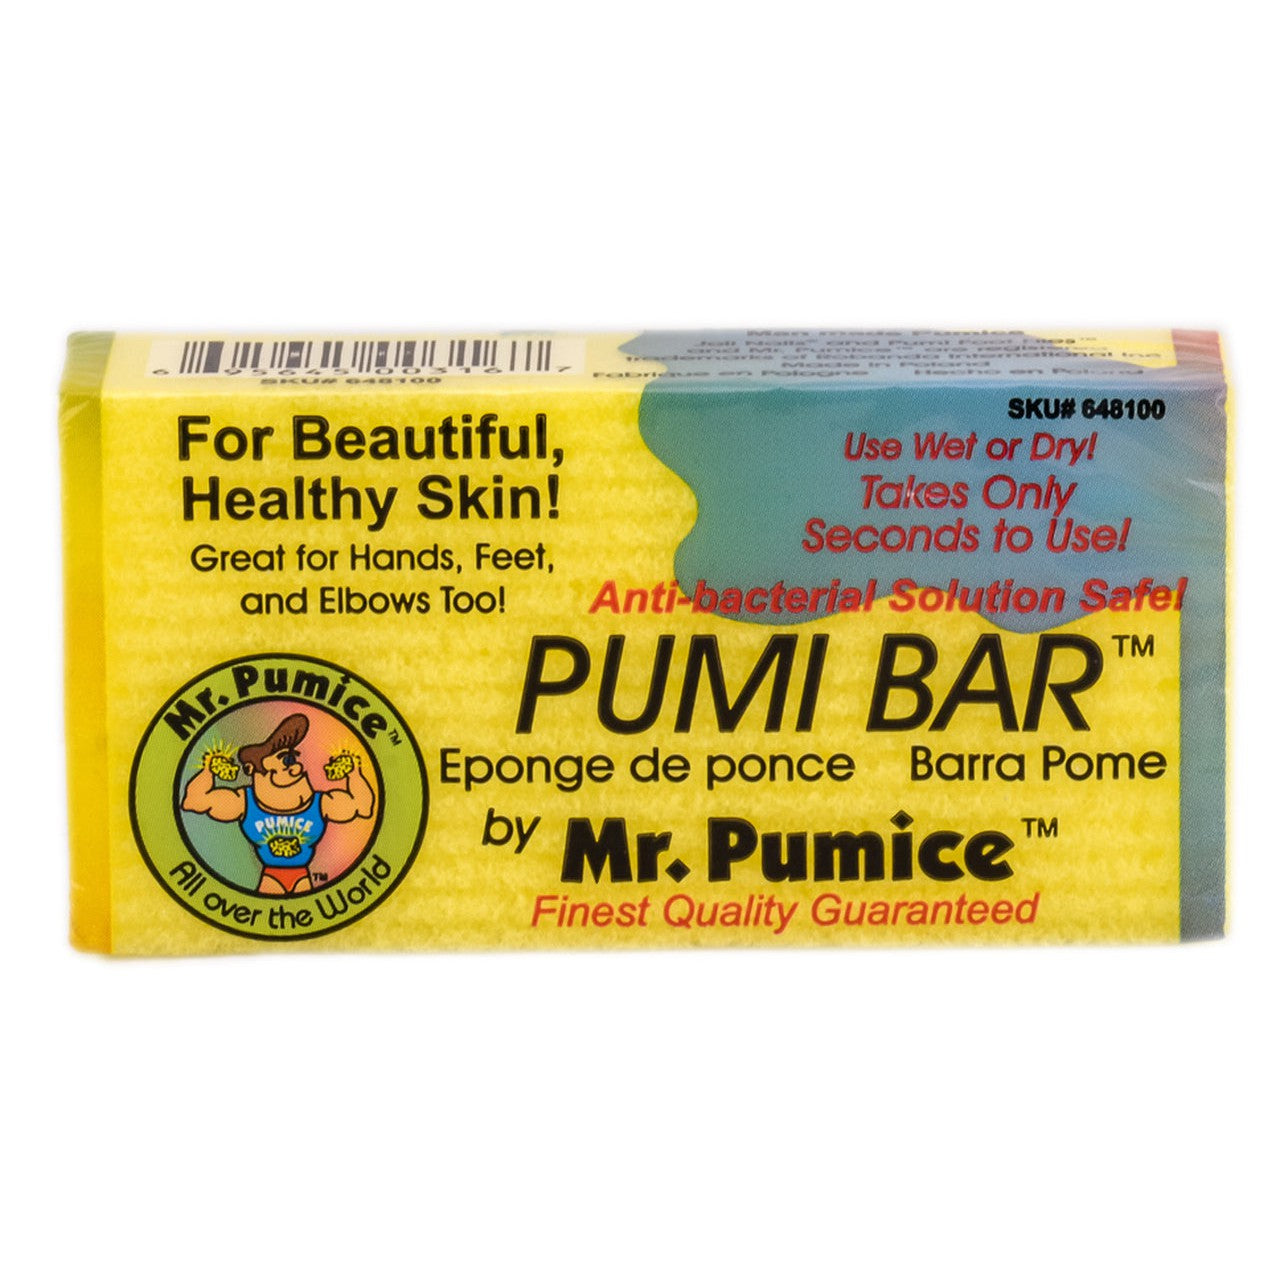 Mr. Pumice Pumi Pedicure Bar (Assorted Colors)